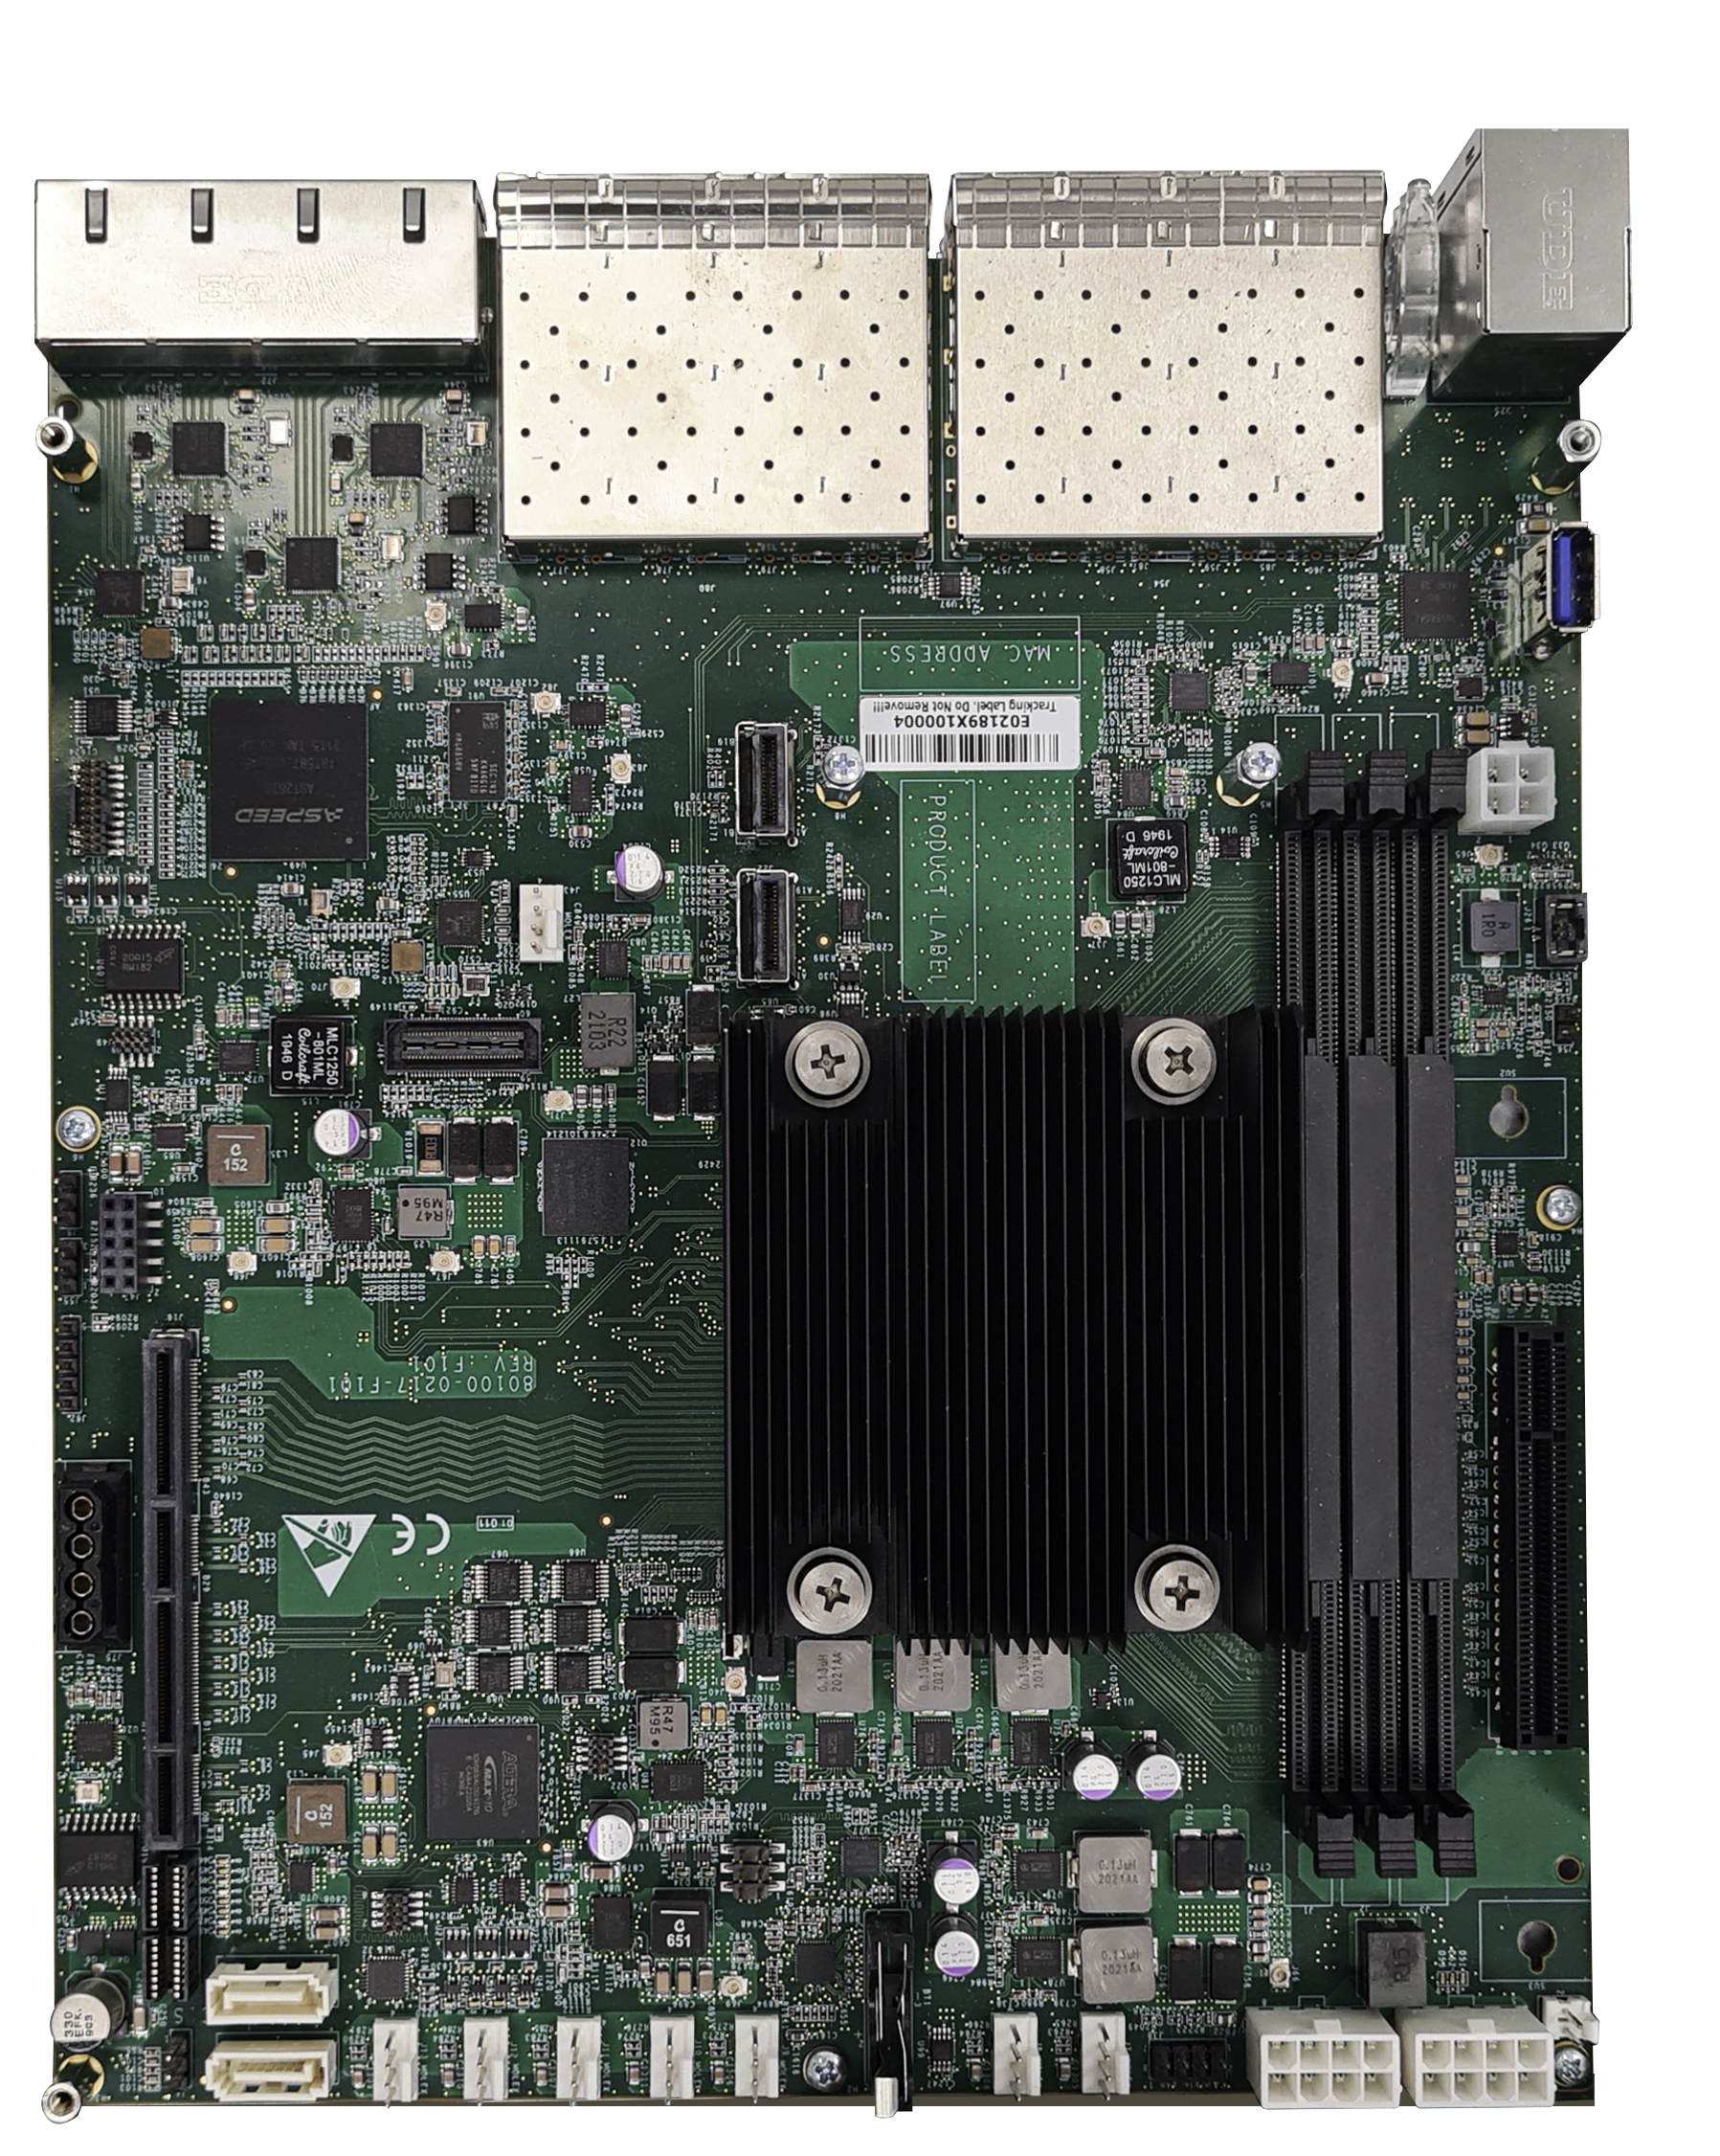 Silicom Marbella motherboard intel xeon based